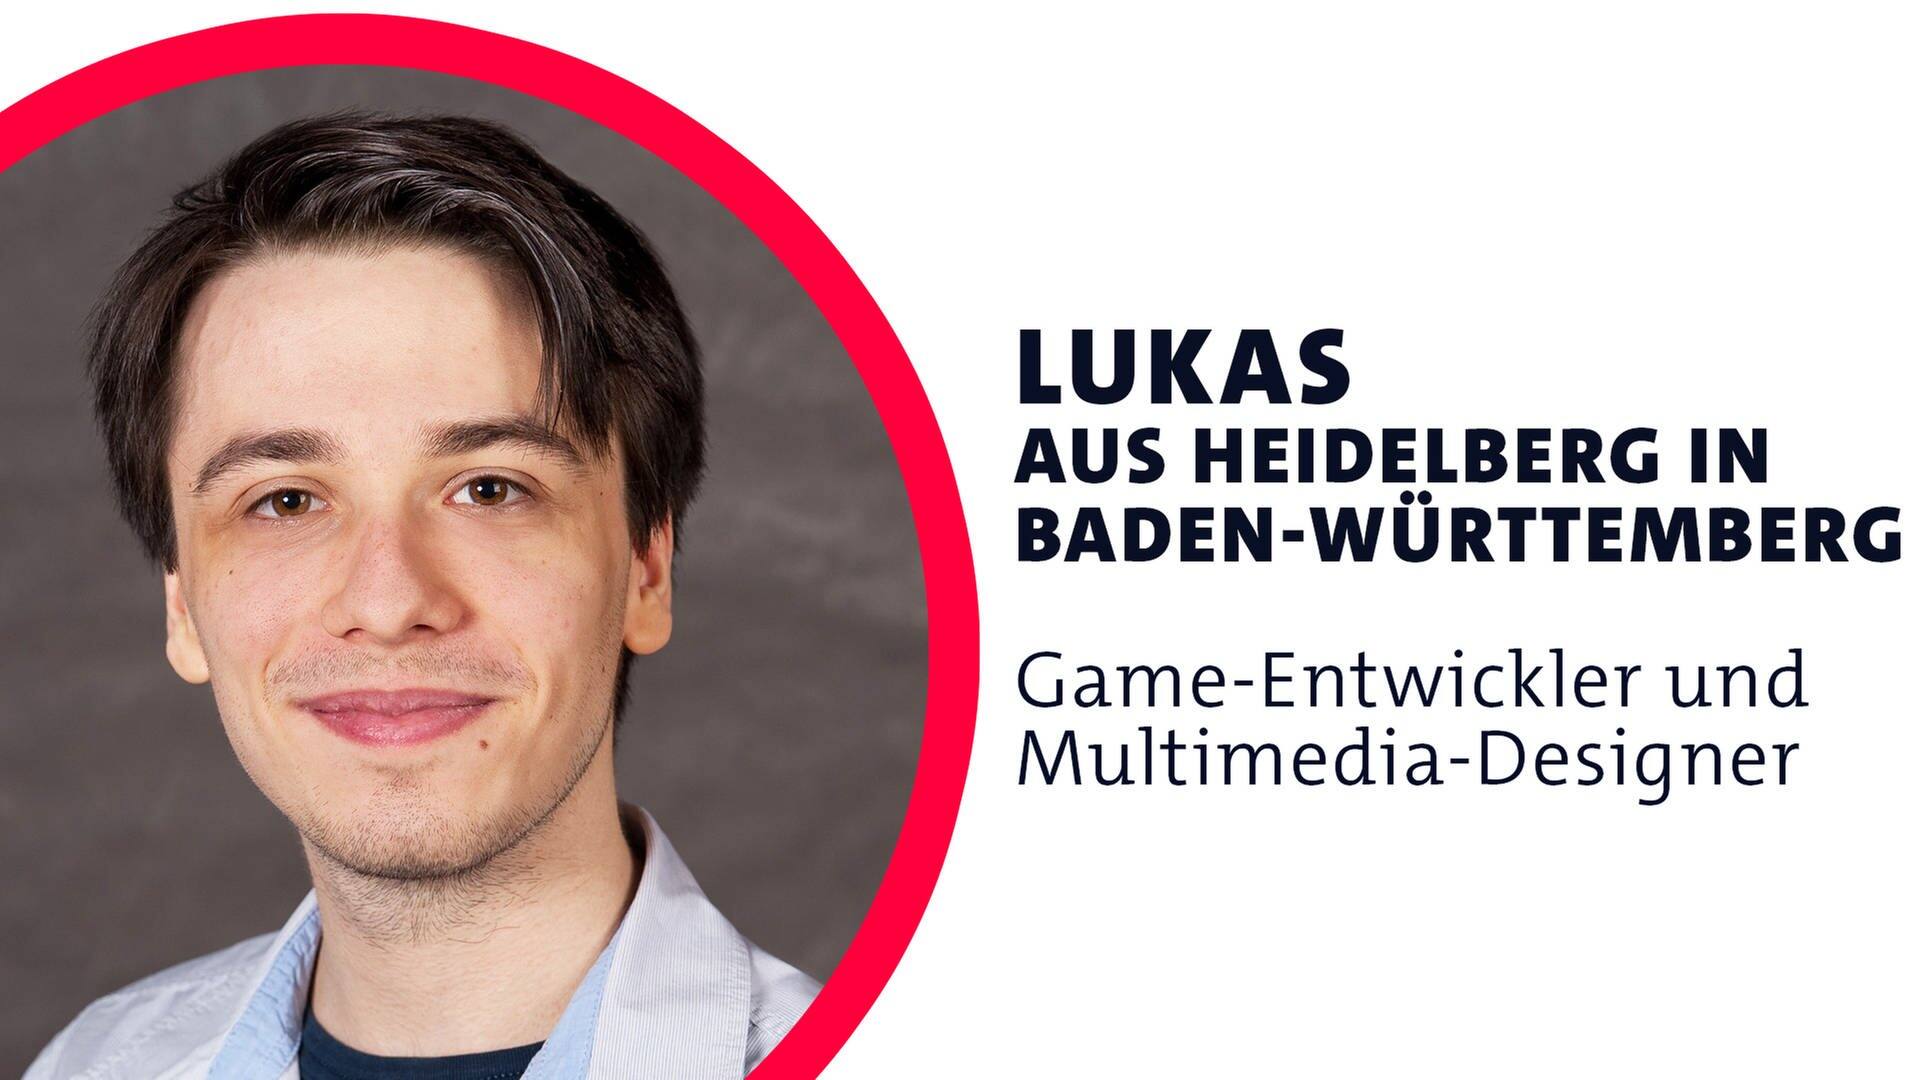 Lukas aus Heidelberg ist Game-Entwickler und Multimedia-Designer (Foto: SWR3, Thomas Keller)